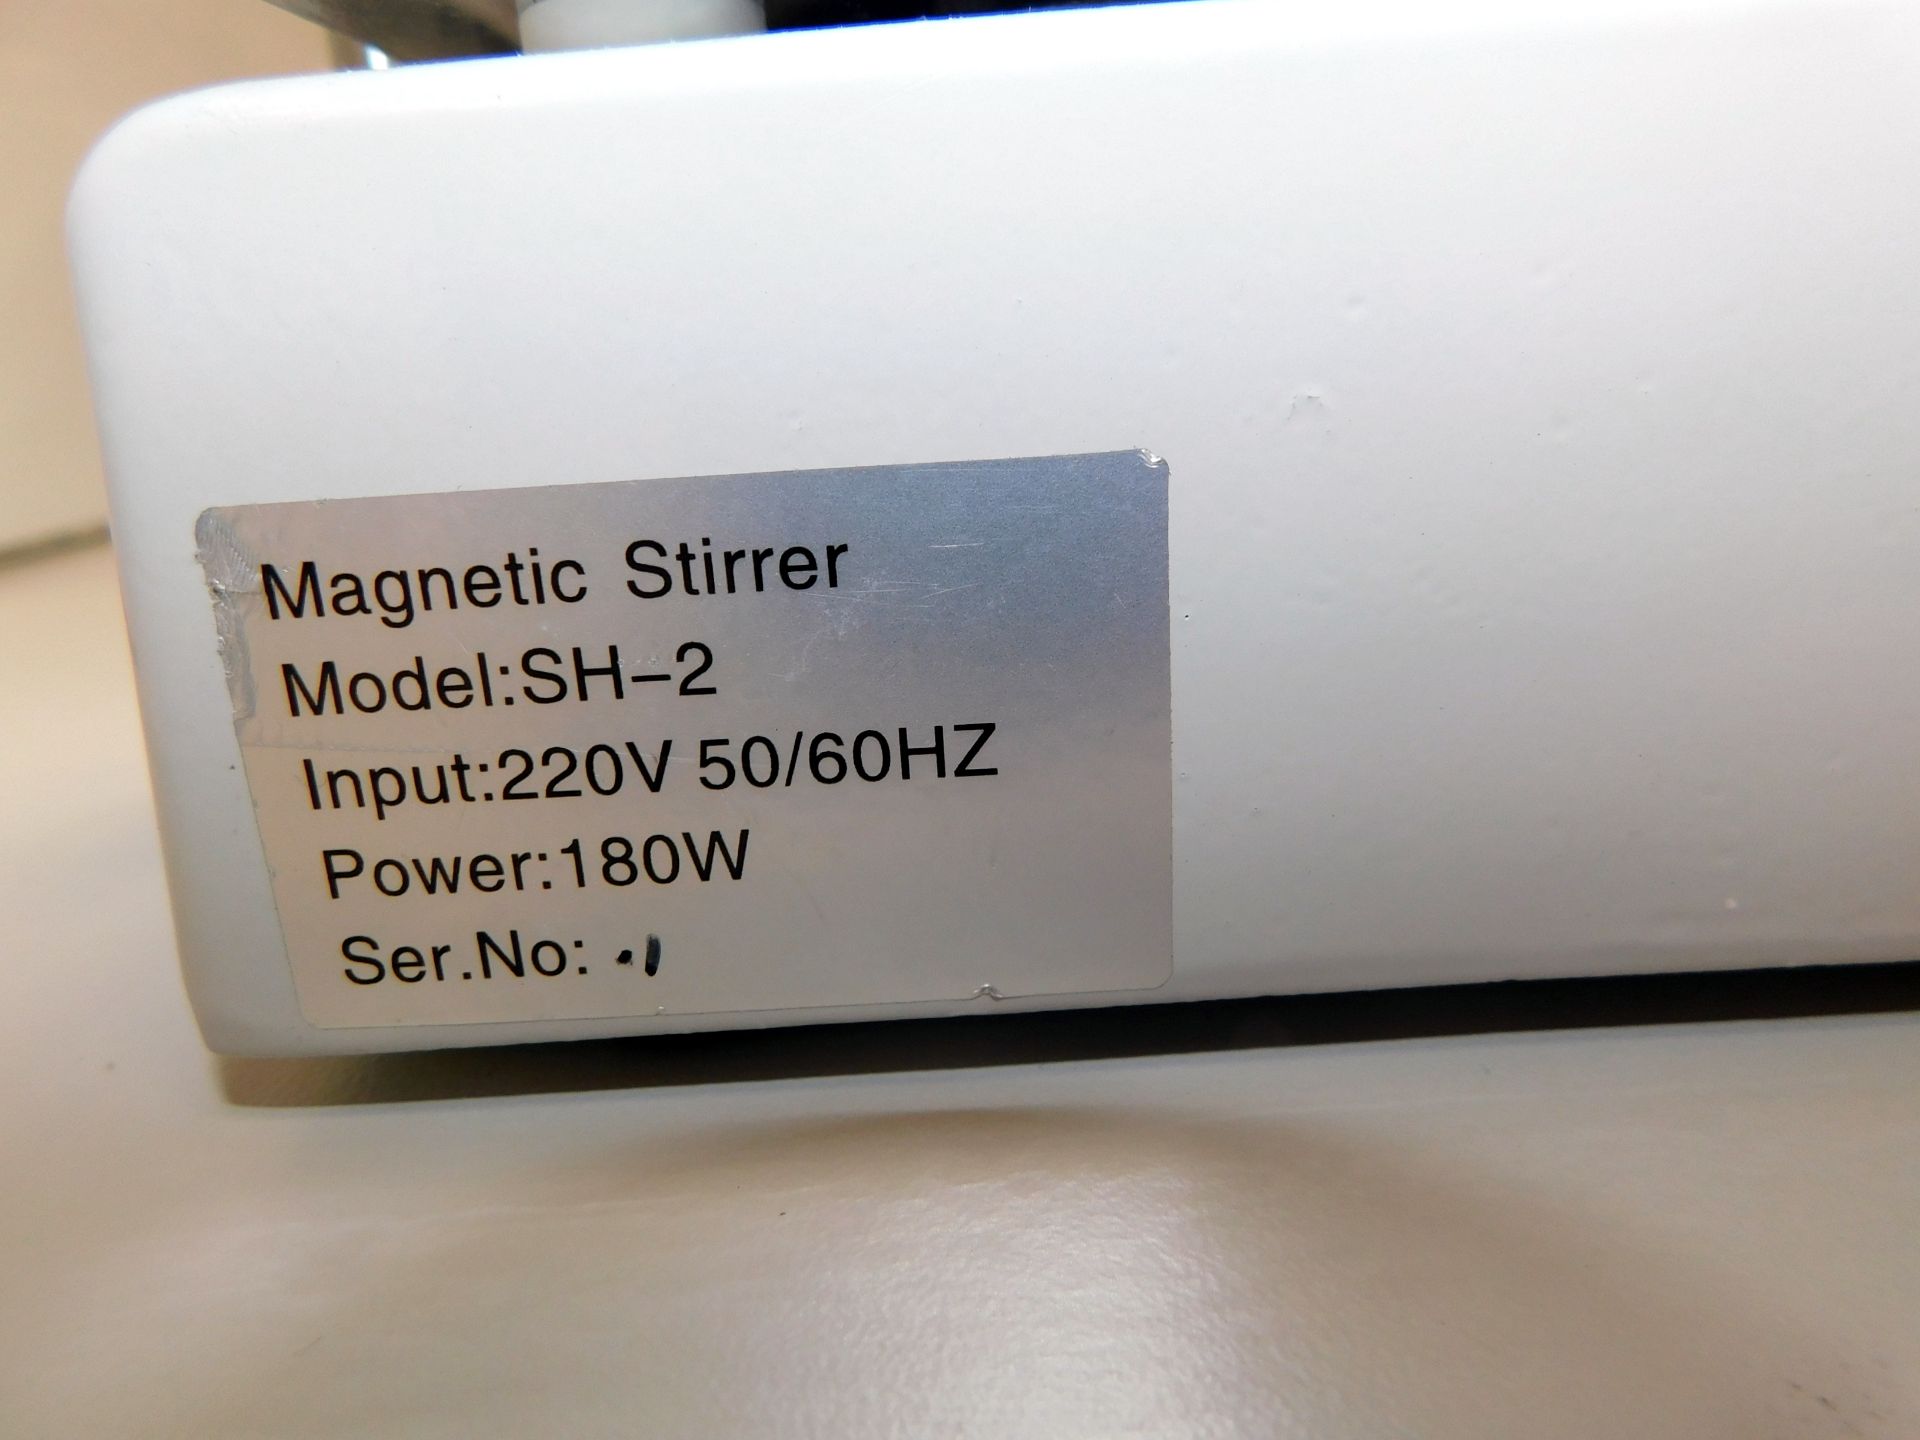 Amtast MSH-2 Hotplate & Magnetic Stirrer - Image 3 of 3